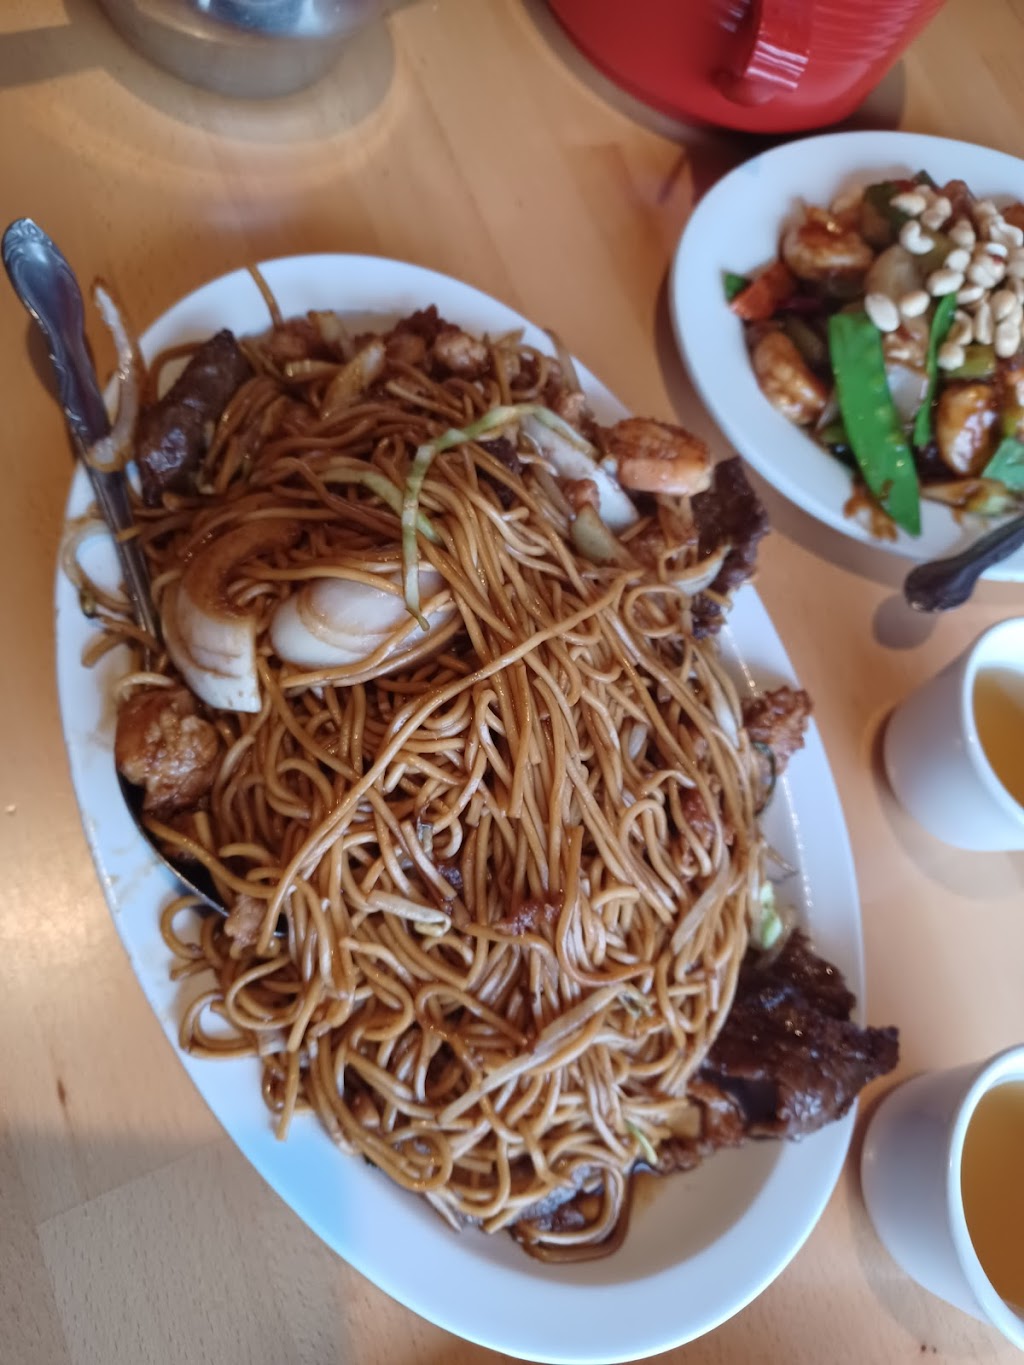 Chens Chinese Restaurant | 2131 E Broadway, Long Beach, CA 90803 | Phone: (562) 439-0309